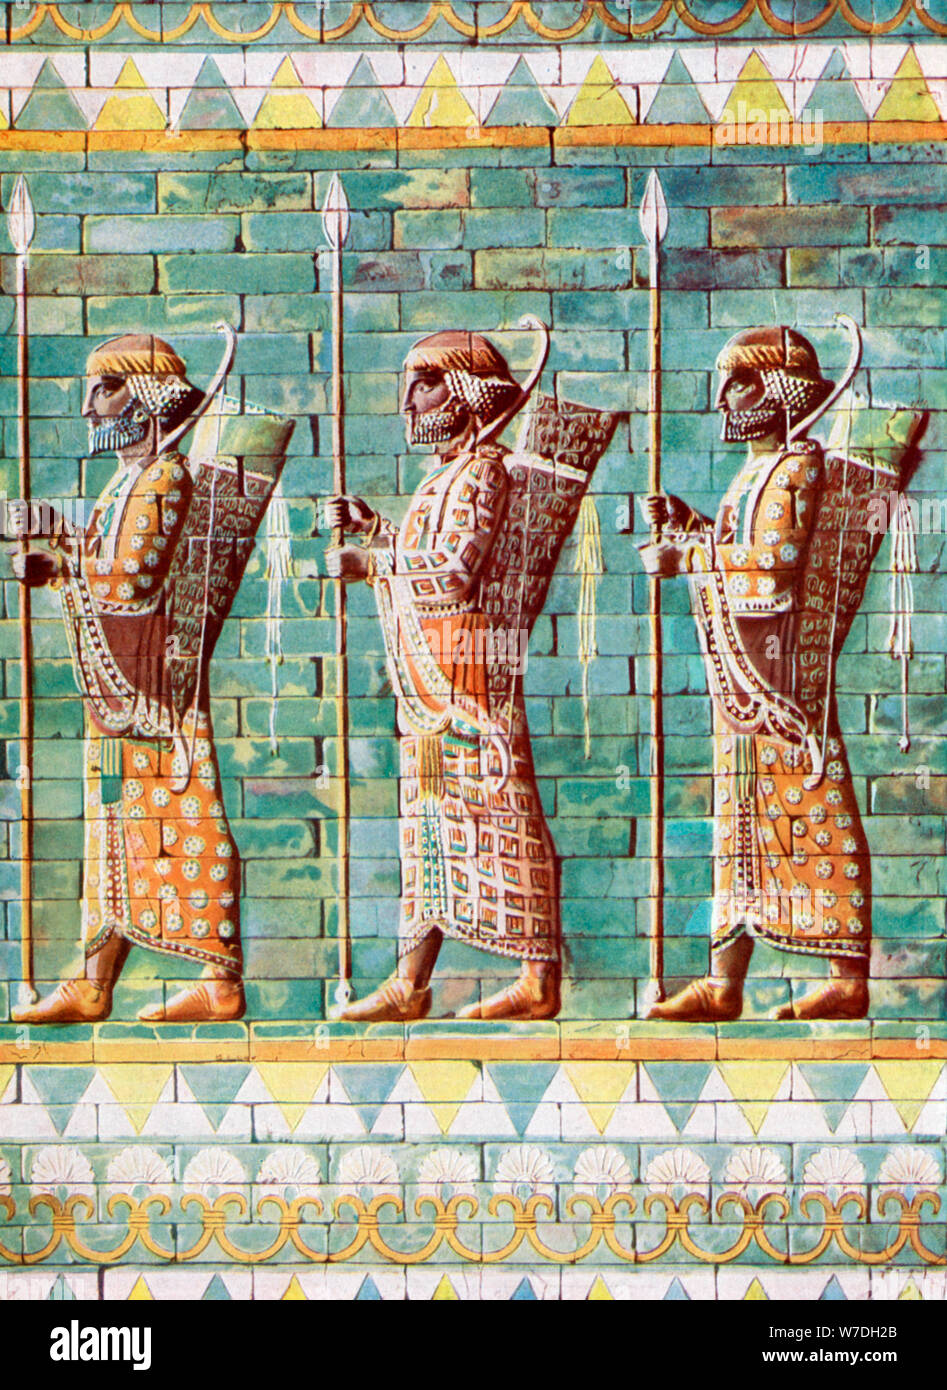 Les archers de Darius Kiing, Suse, Iran, 1933-1934. Artiste : Inconnu Banque D'Images